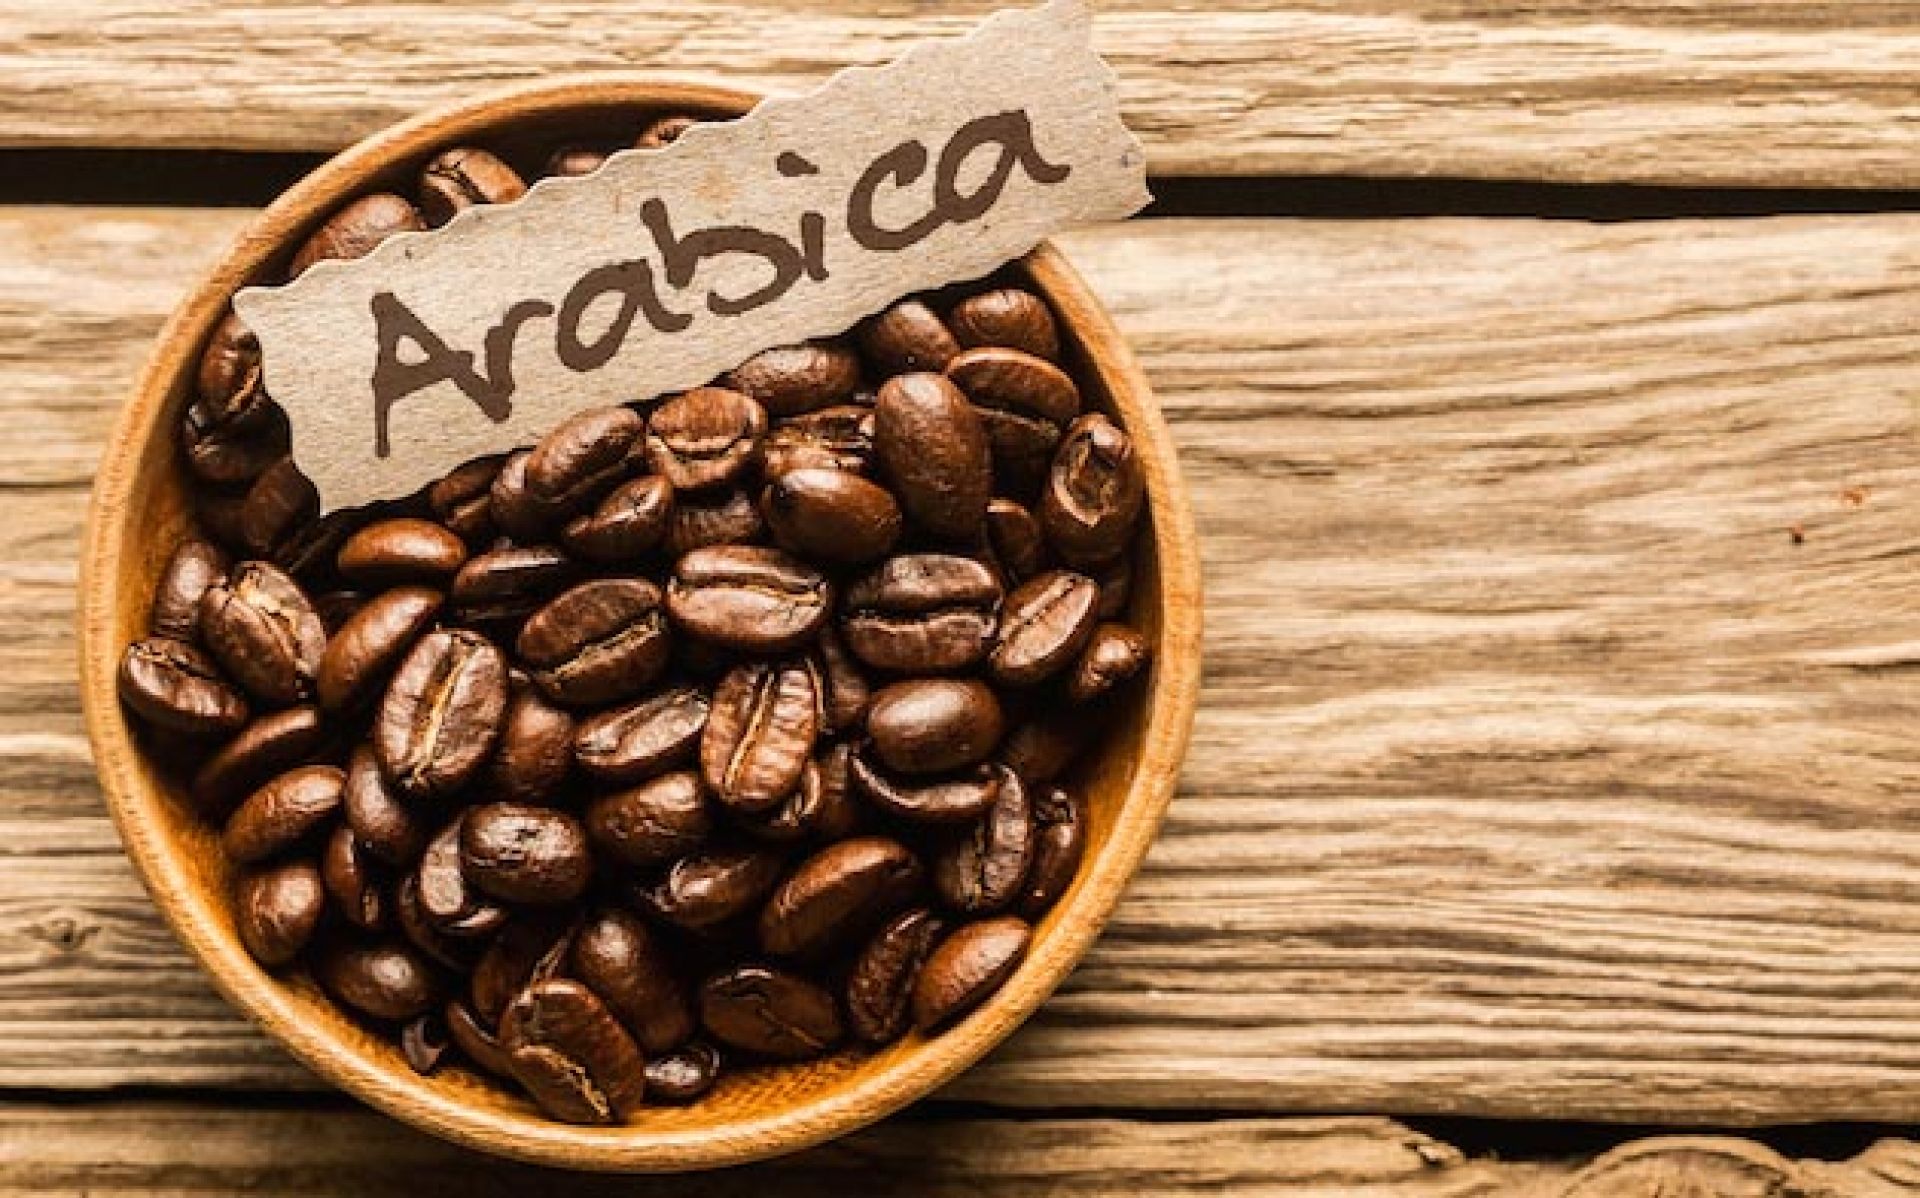 Cà phê Arabica có vị đắng nhẹ và vị chua thanh sảng khoái